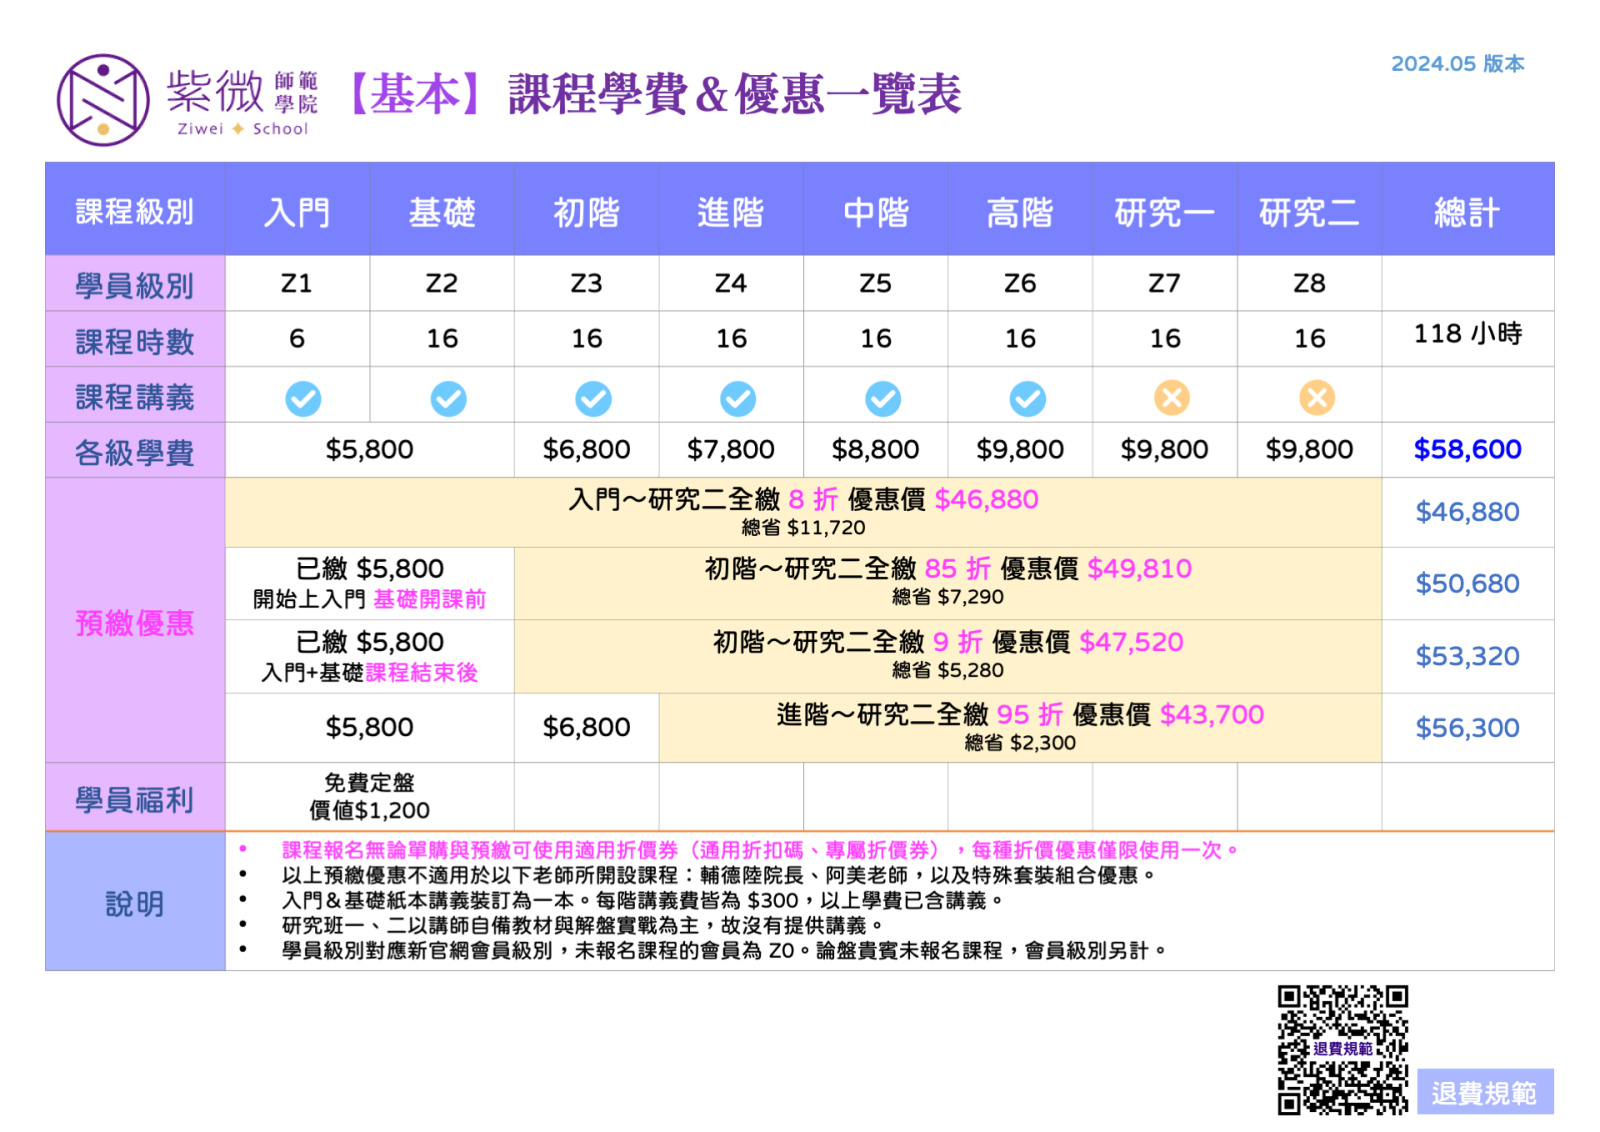 紫微師範學院 最新學費一覽表(2024.05)